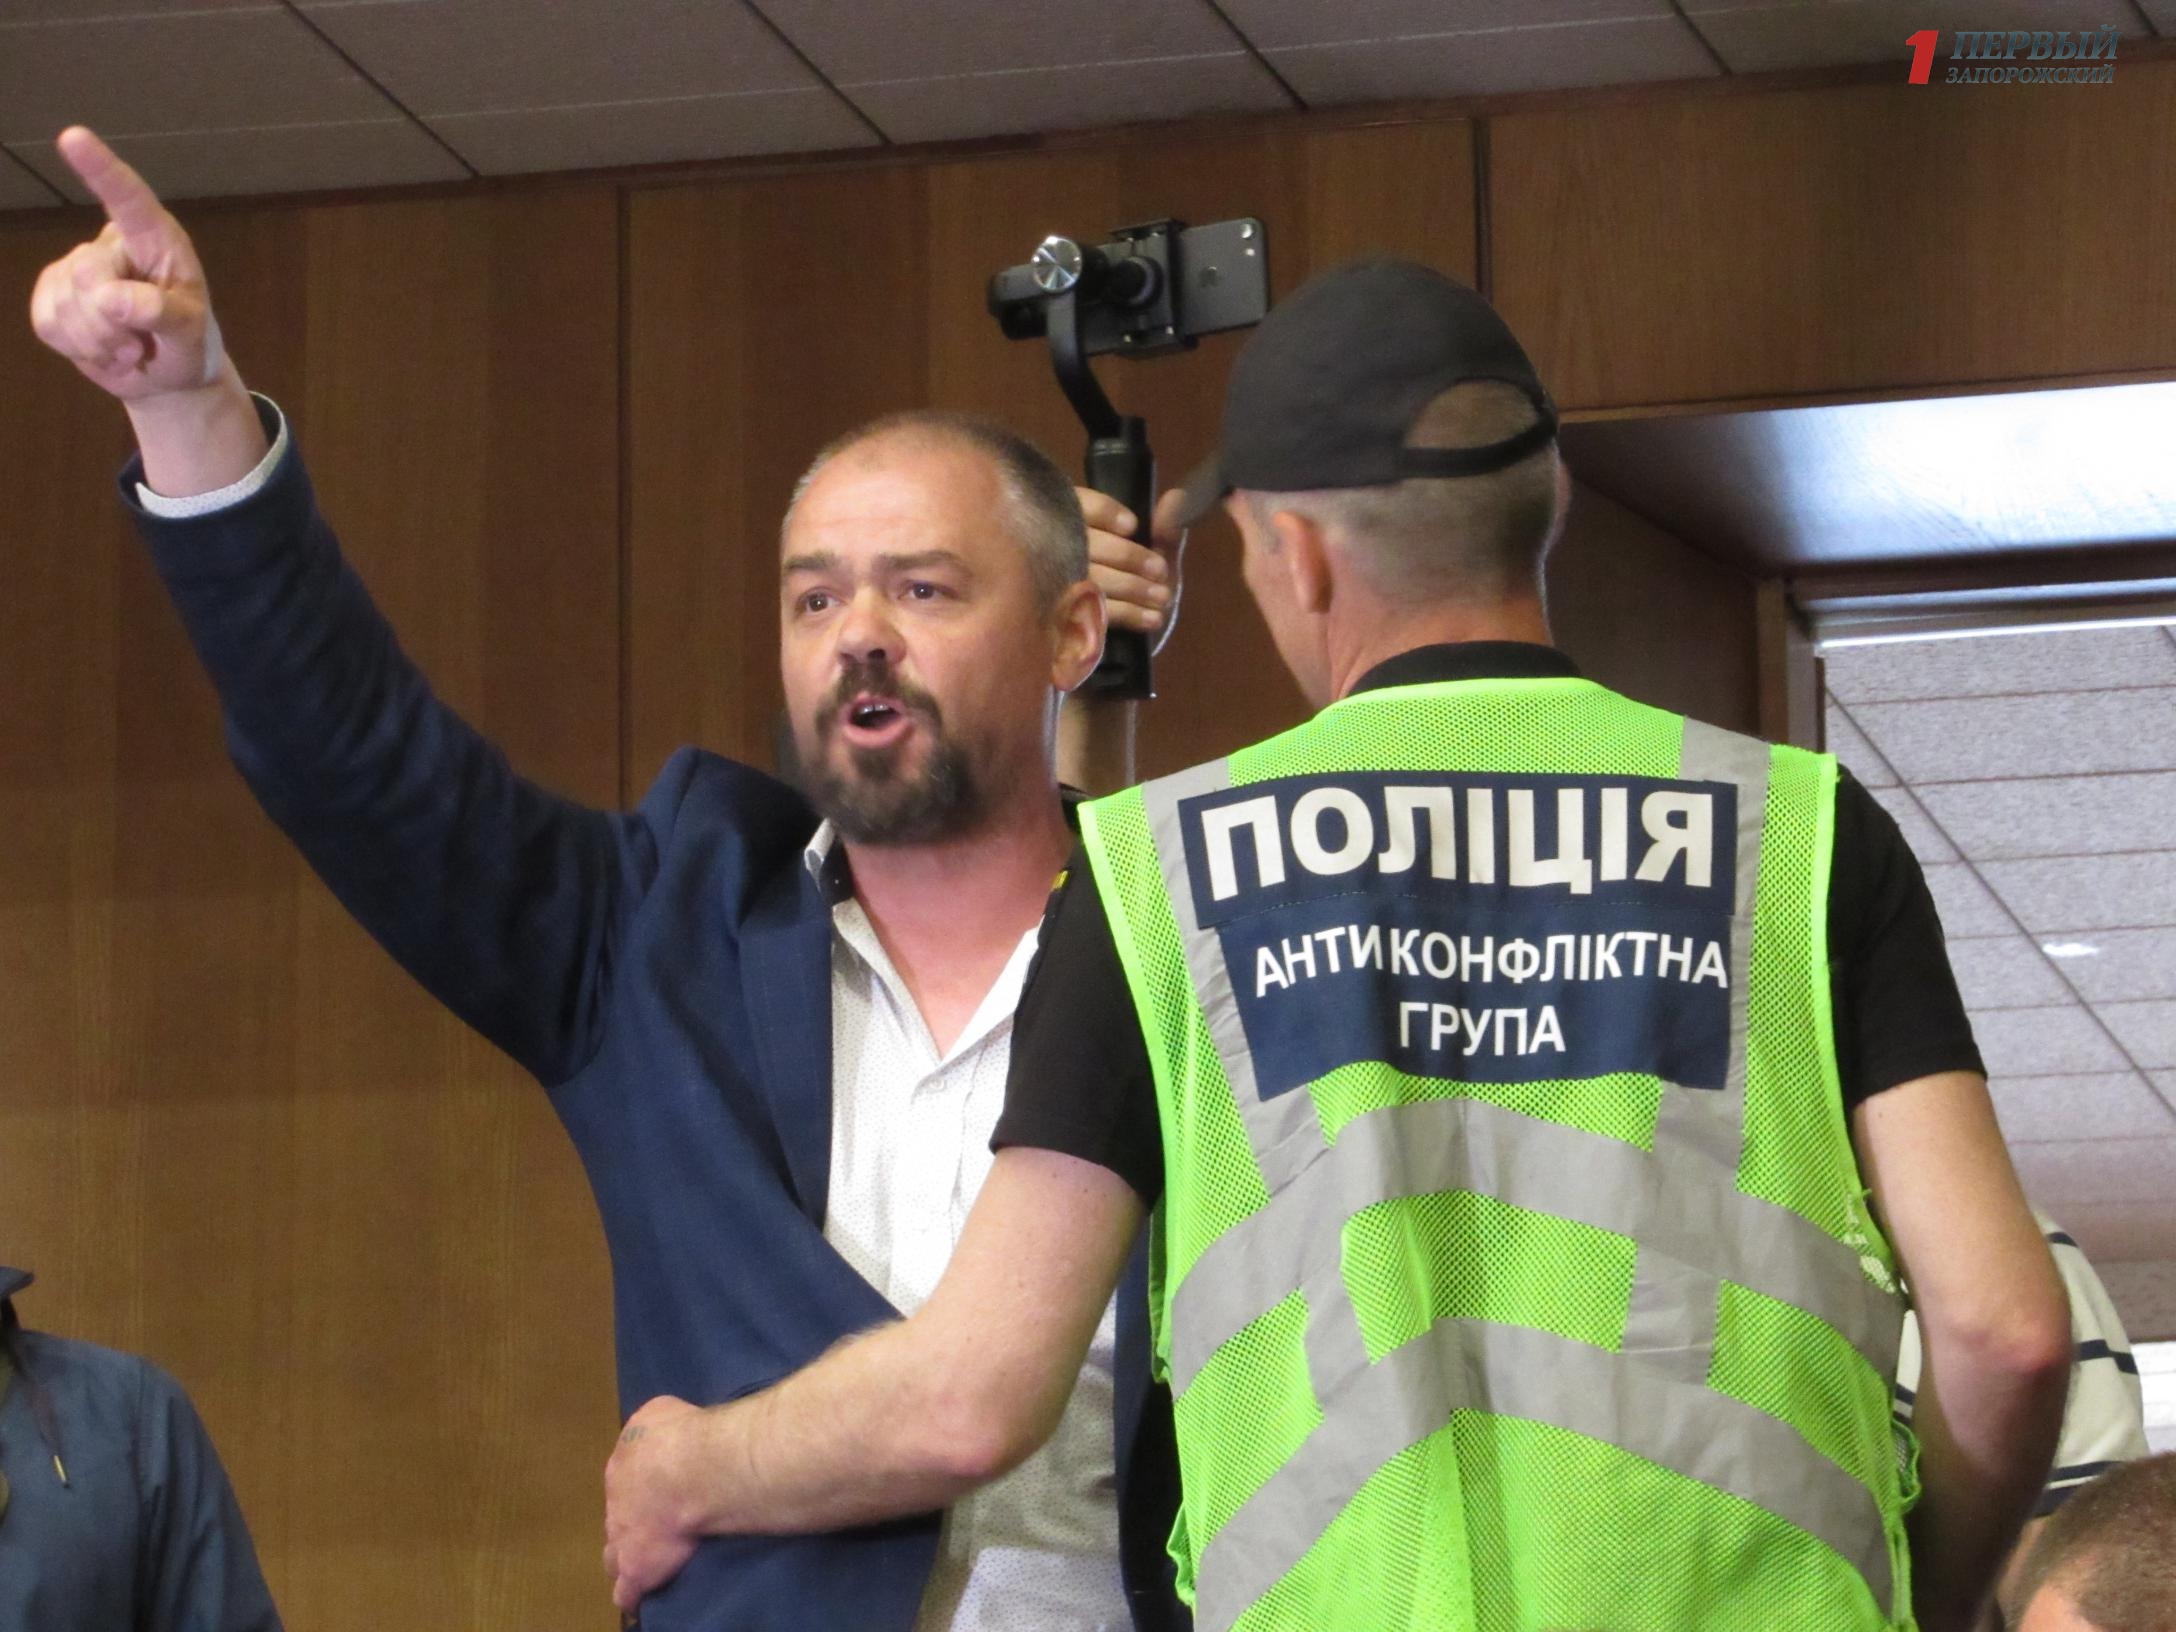 На сессии Запорожского областного совета Олешку снова не дали слово, а в ответ он обозвал депутатов «негодяями» -  ВИДЕО